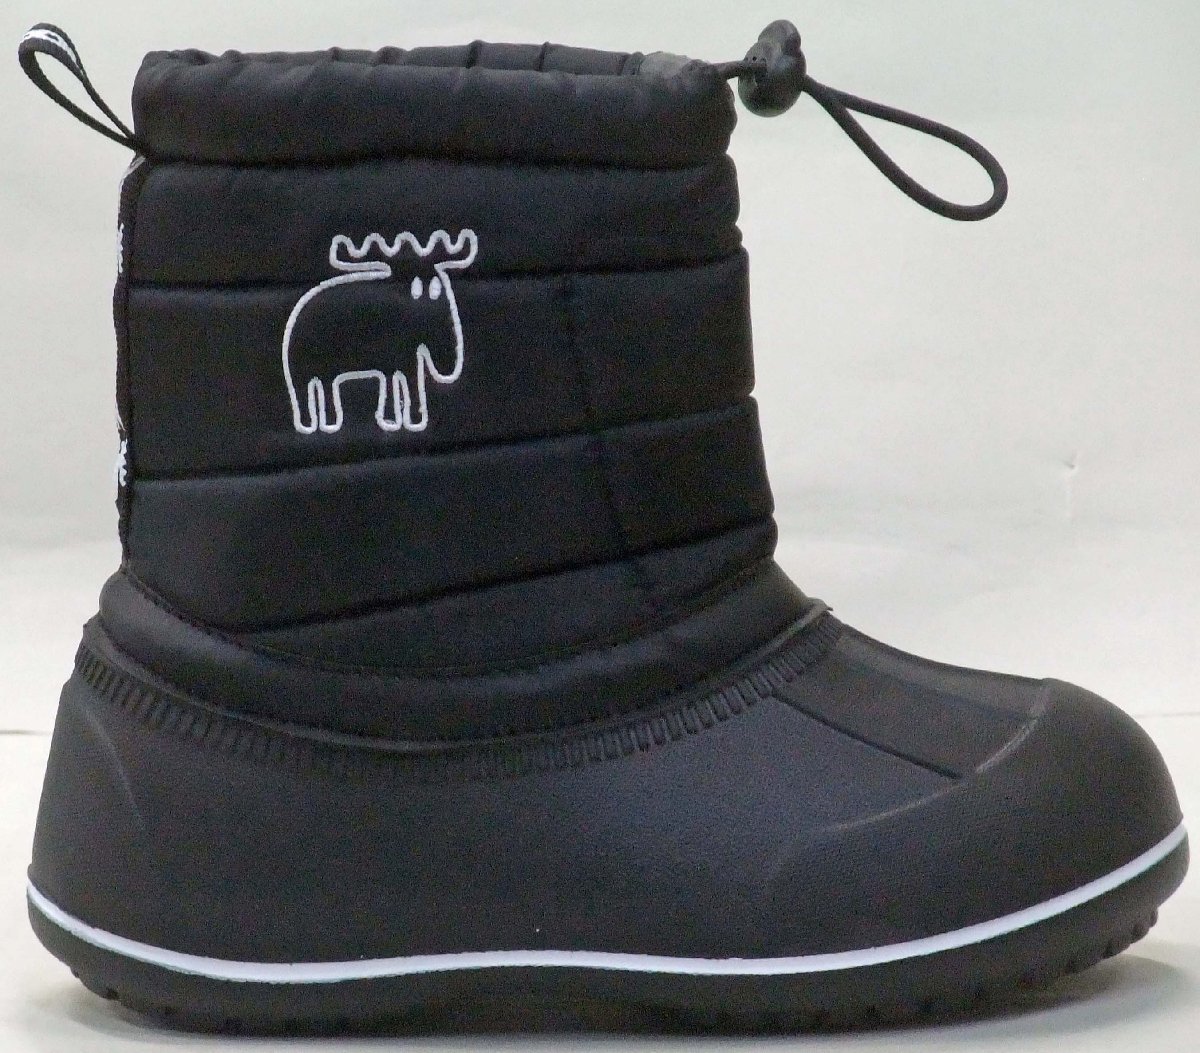  доставка бесплатно  MOZ ... MZ-8209  водонепроницаемый   защита от холода   ... ботинки   черный  16cm  детский   легкий (по весу)   снег  ... ботинки  ... ...  тёплый   снег  страна Характеристики 